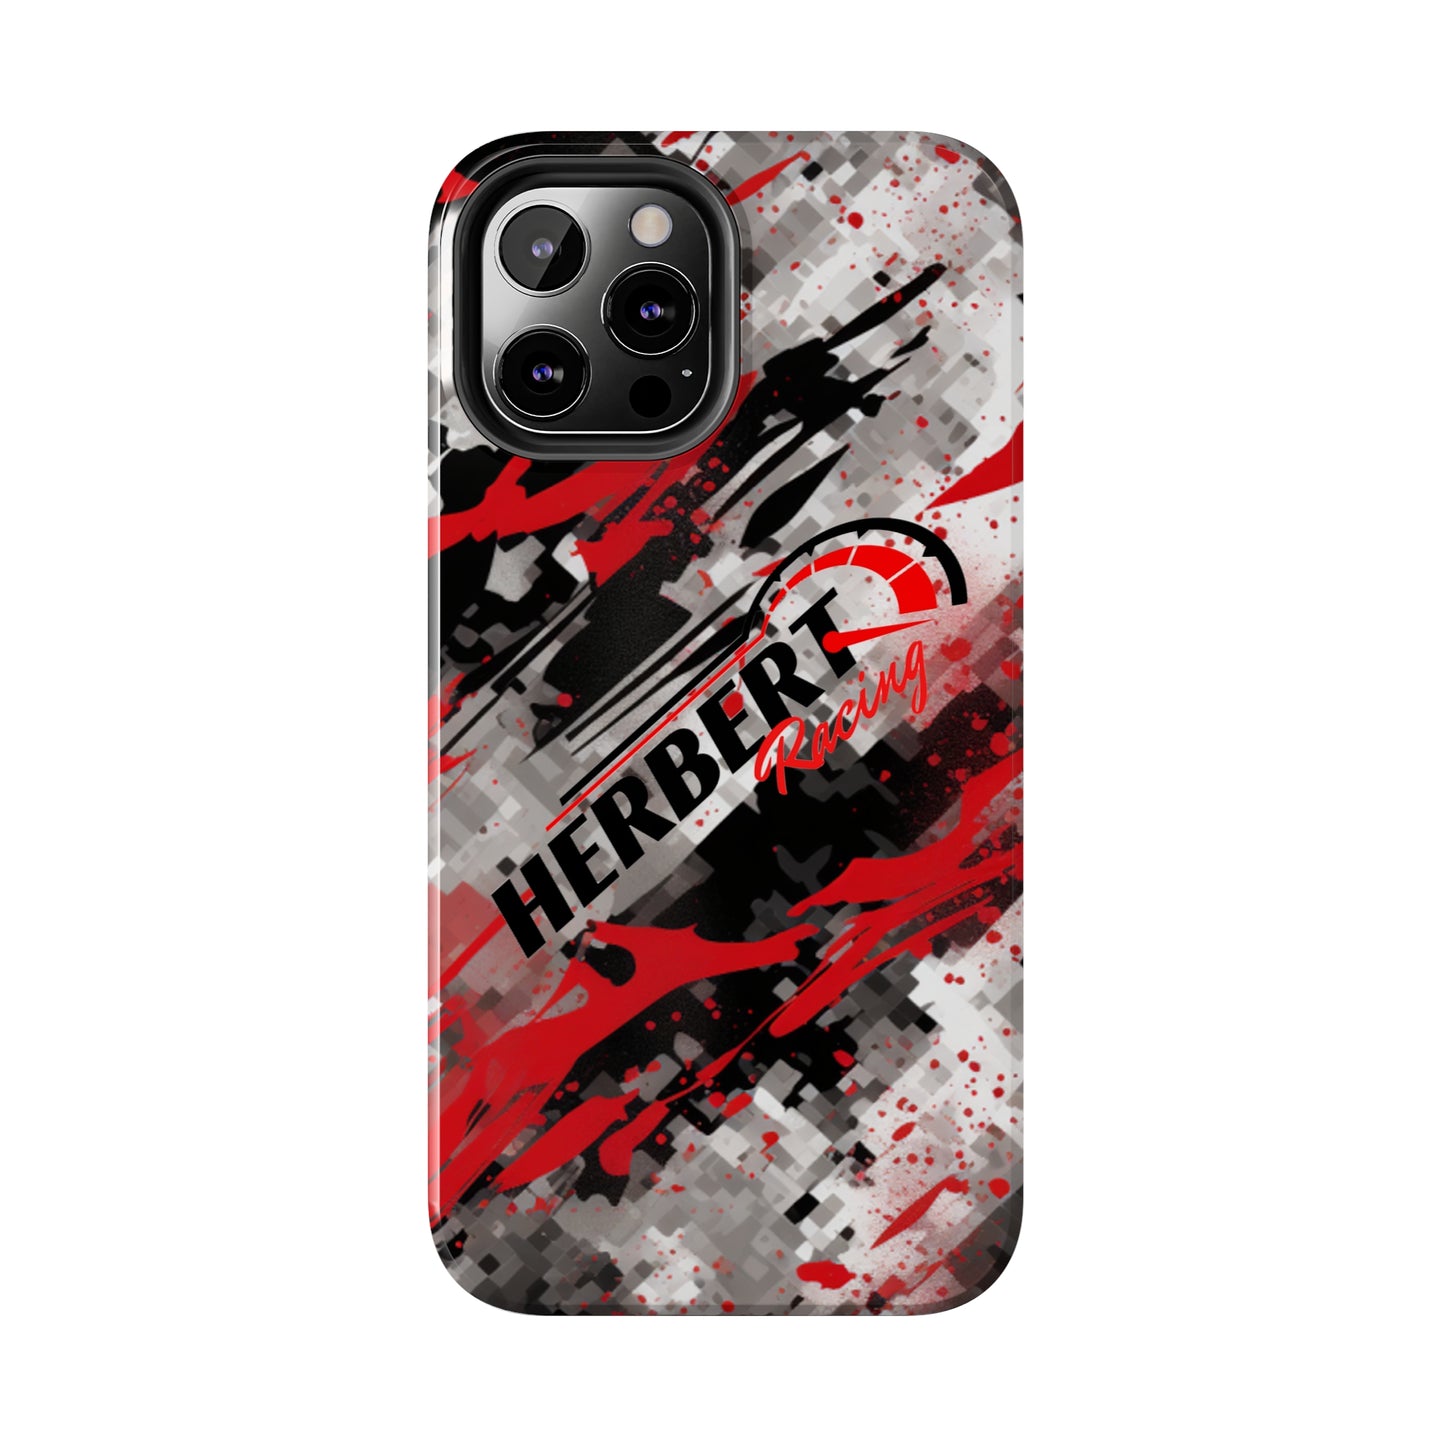 Herbert Racing iPhone Hard Case